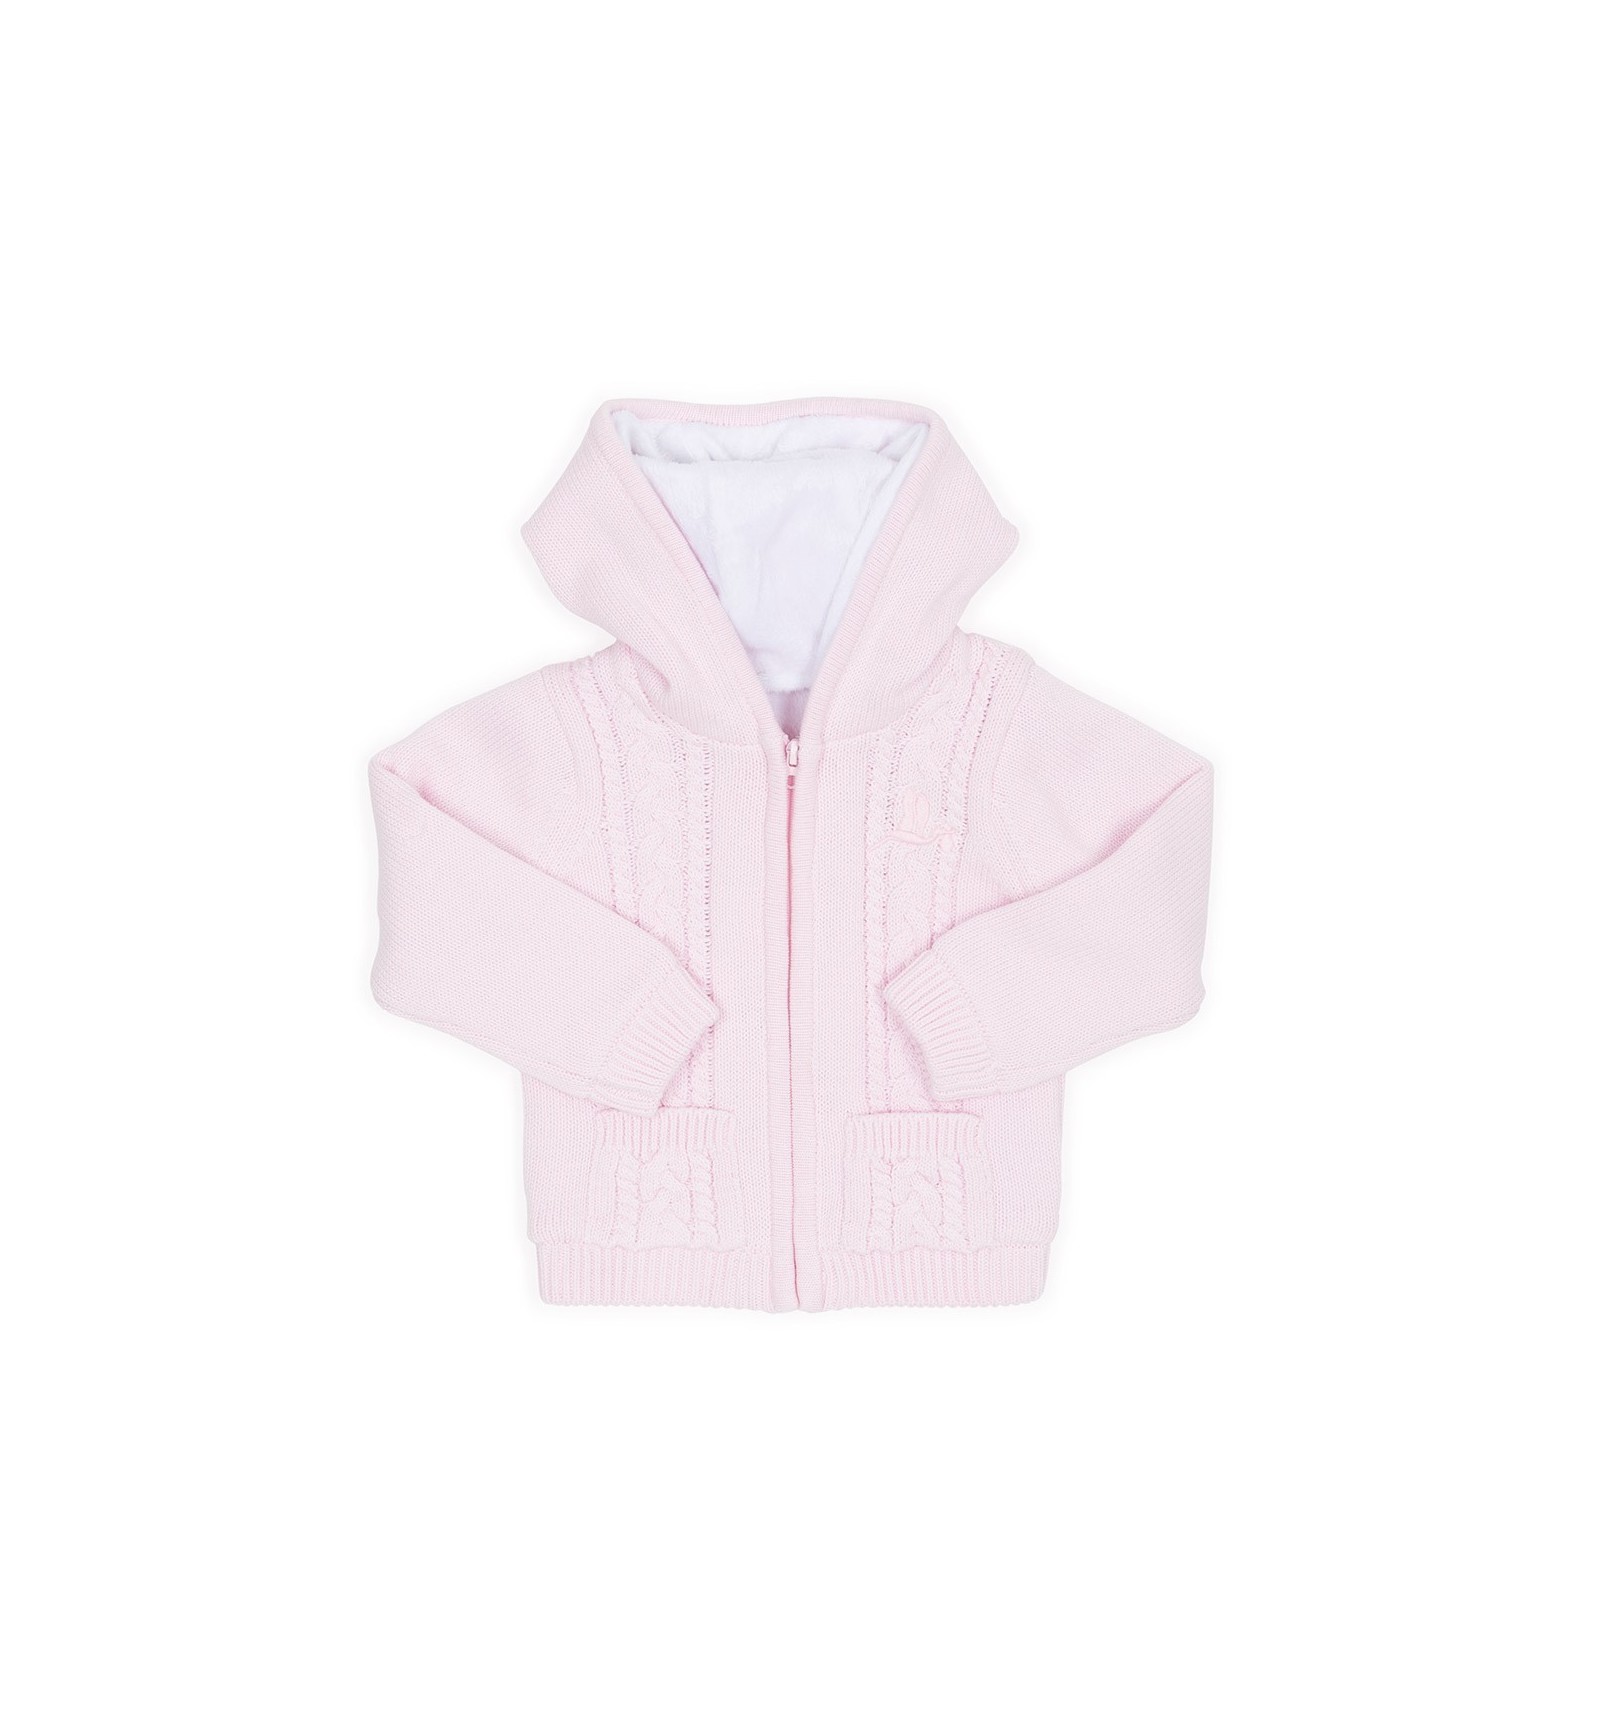 Veste polaire bébé rose